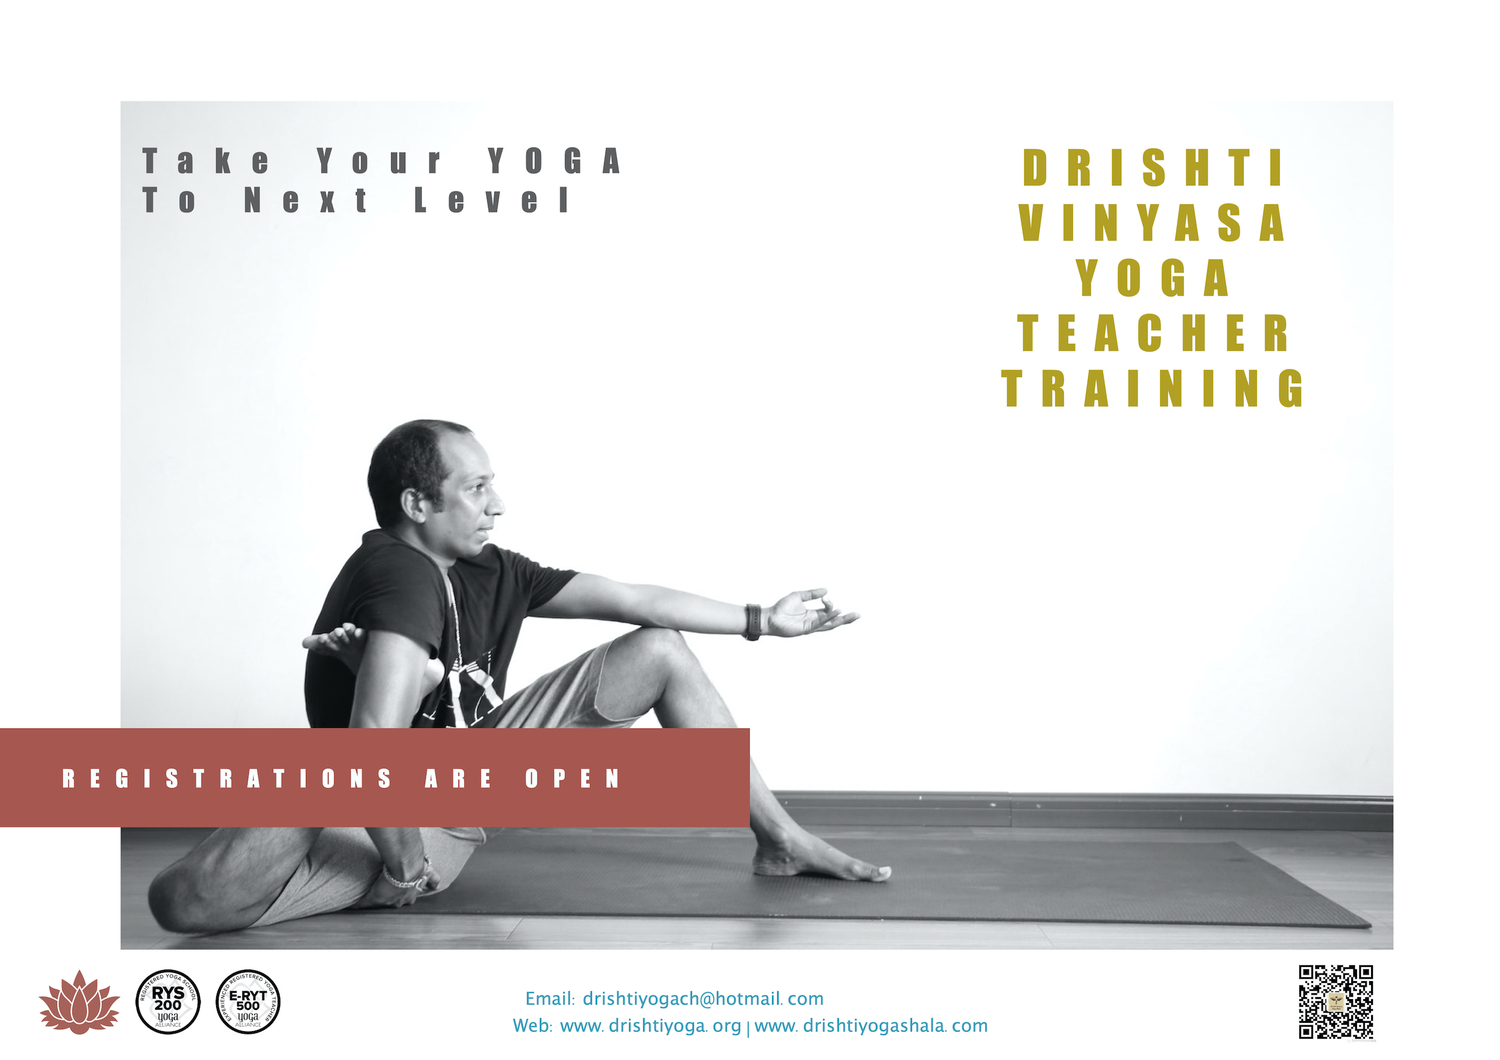 Drishti Vinyasa Yoga Teacher Training - Aug-Nov 2020 - Shanghai, China 9-p1.jpg